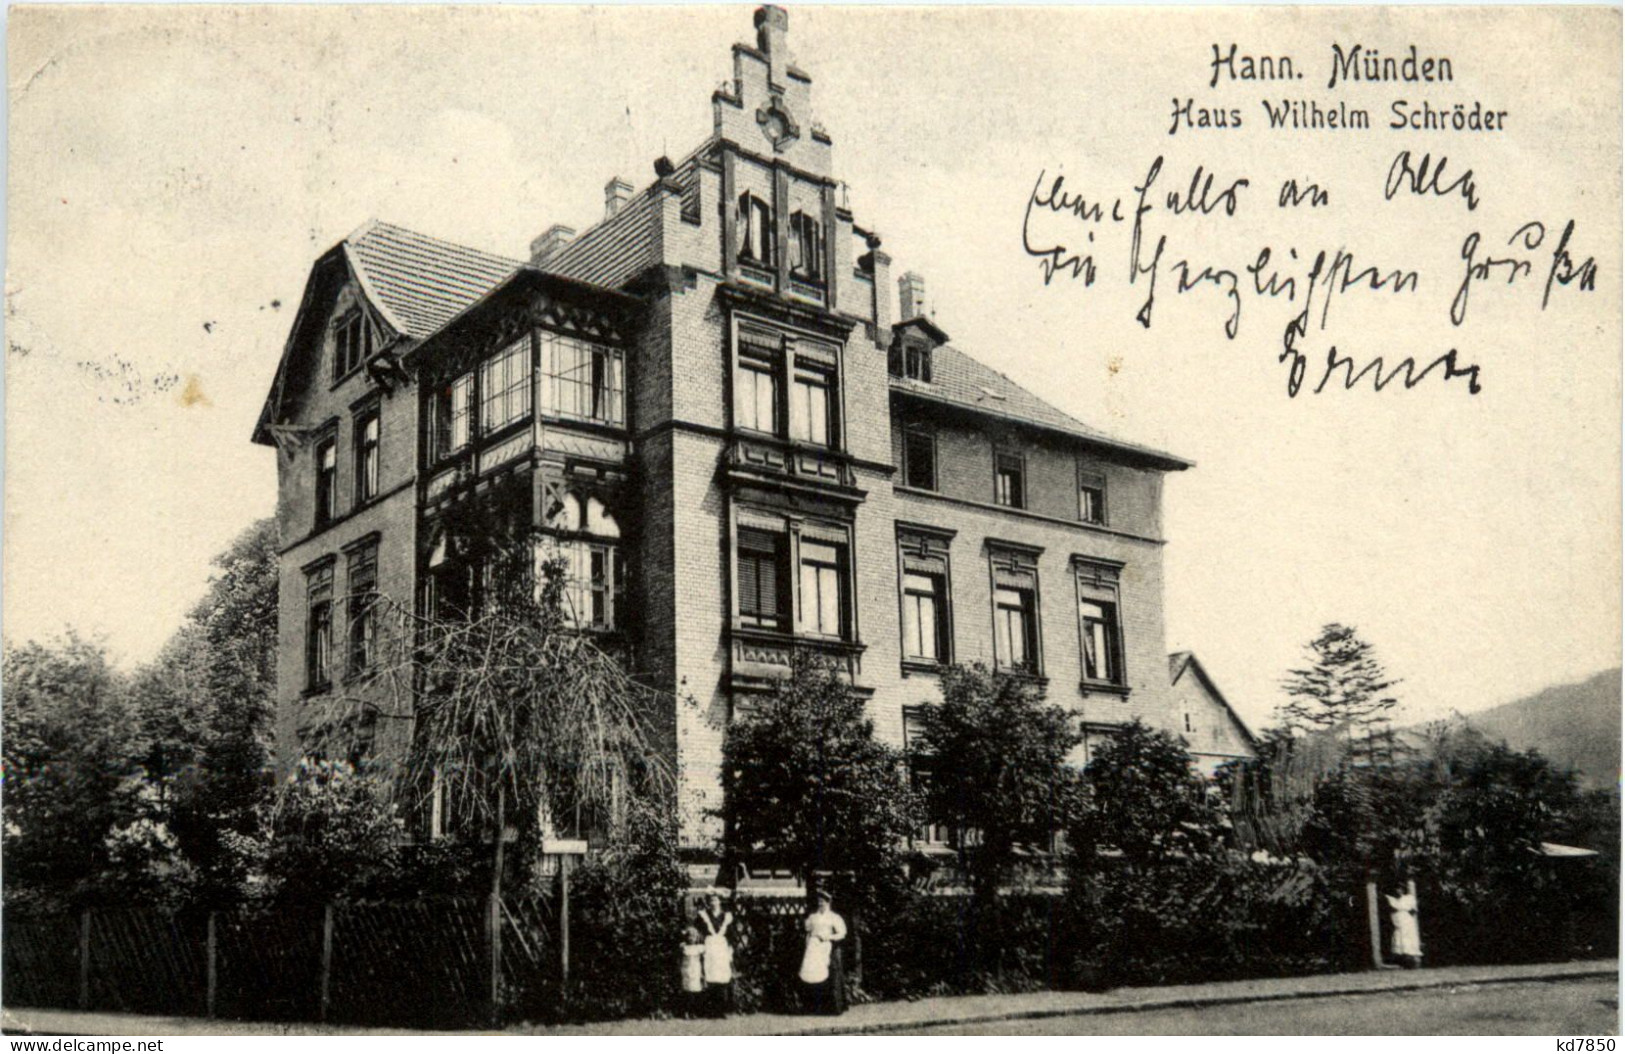 Hann. Münden - Haus Wilhelm Schröder - Hannoversch Münden